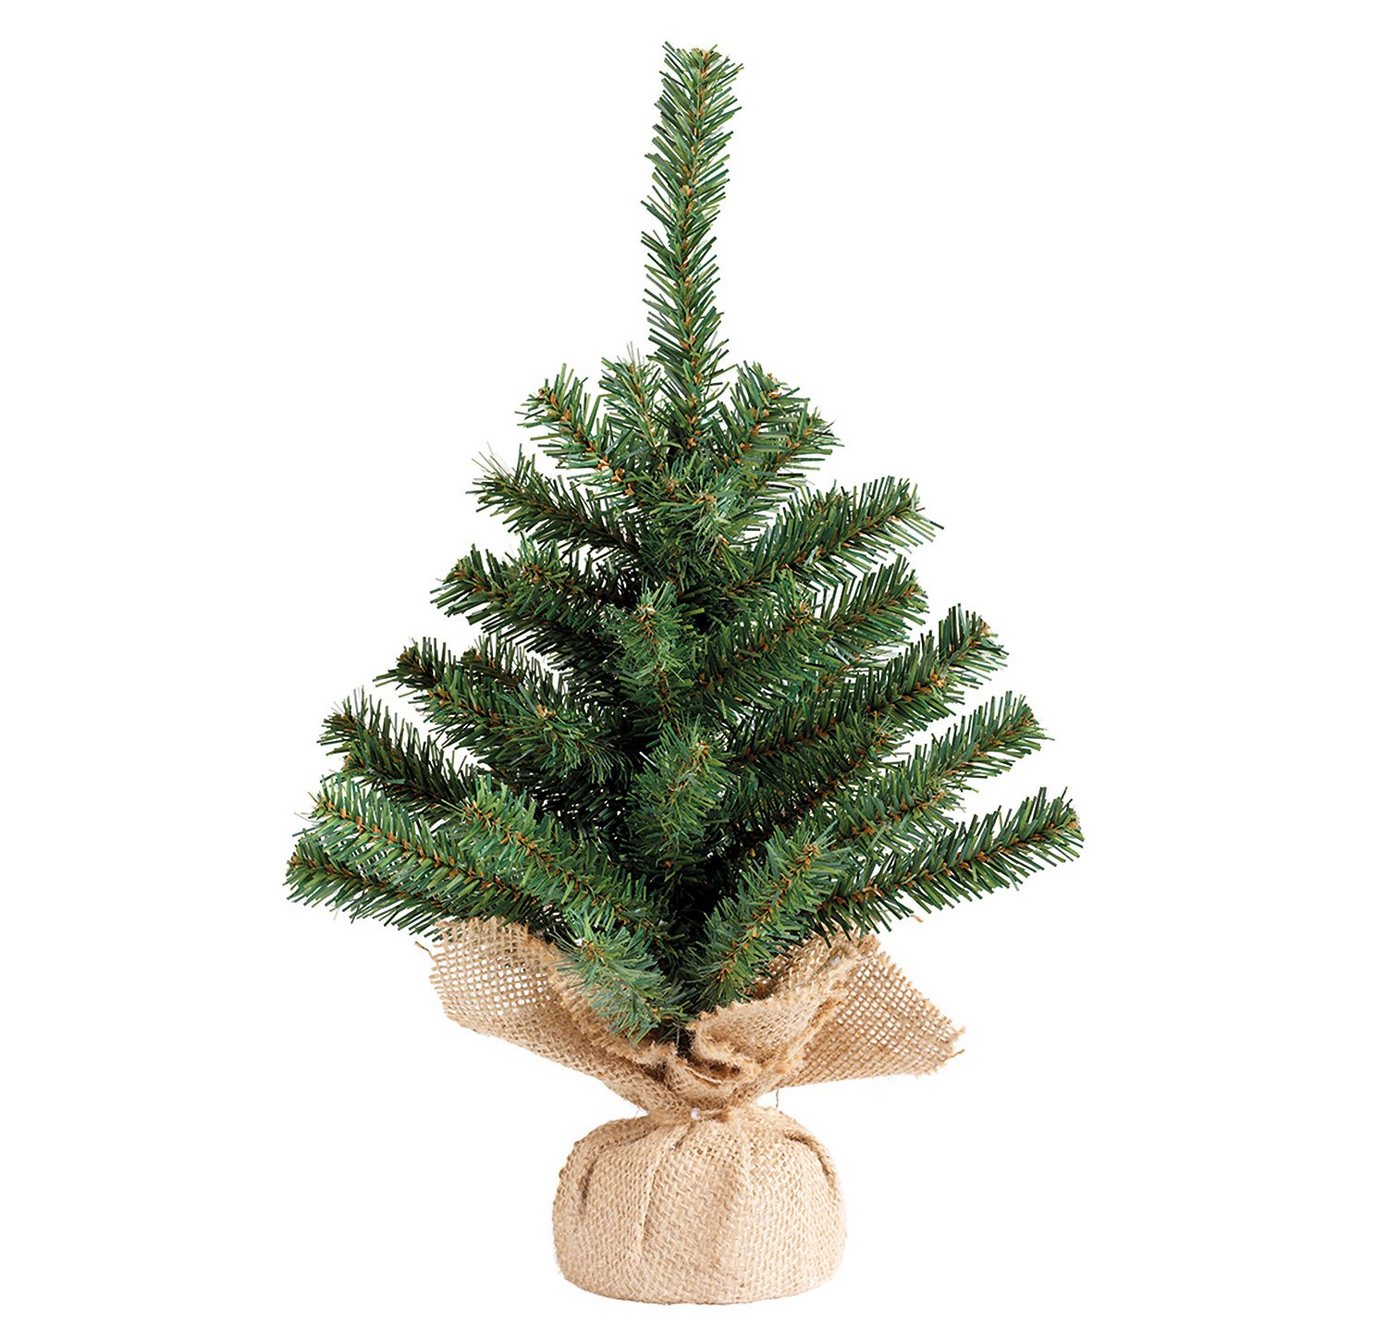 Decoris season decorations Künstlicher Weihnachtsbaum, Tannenbaum künstlich im Jutesack 45cm grün von Decoris season decorations